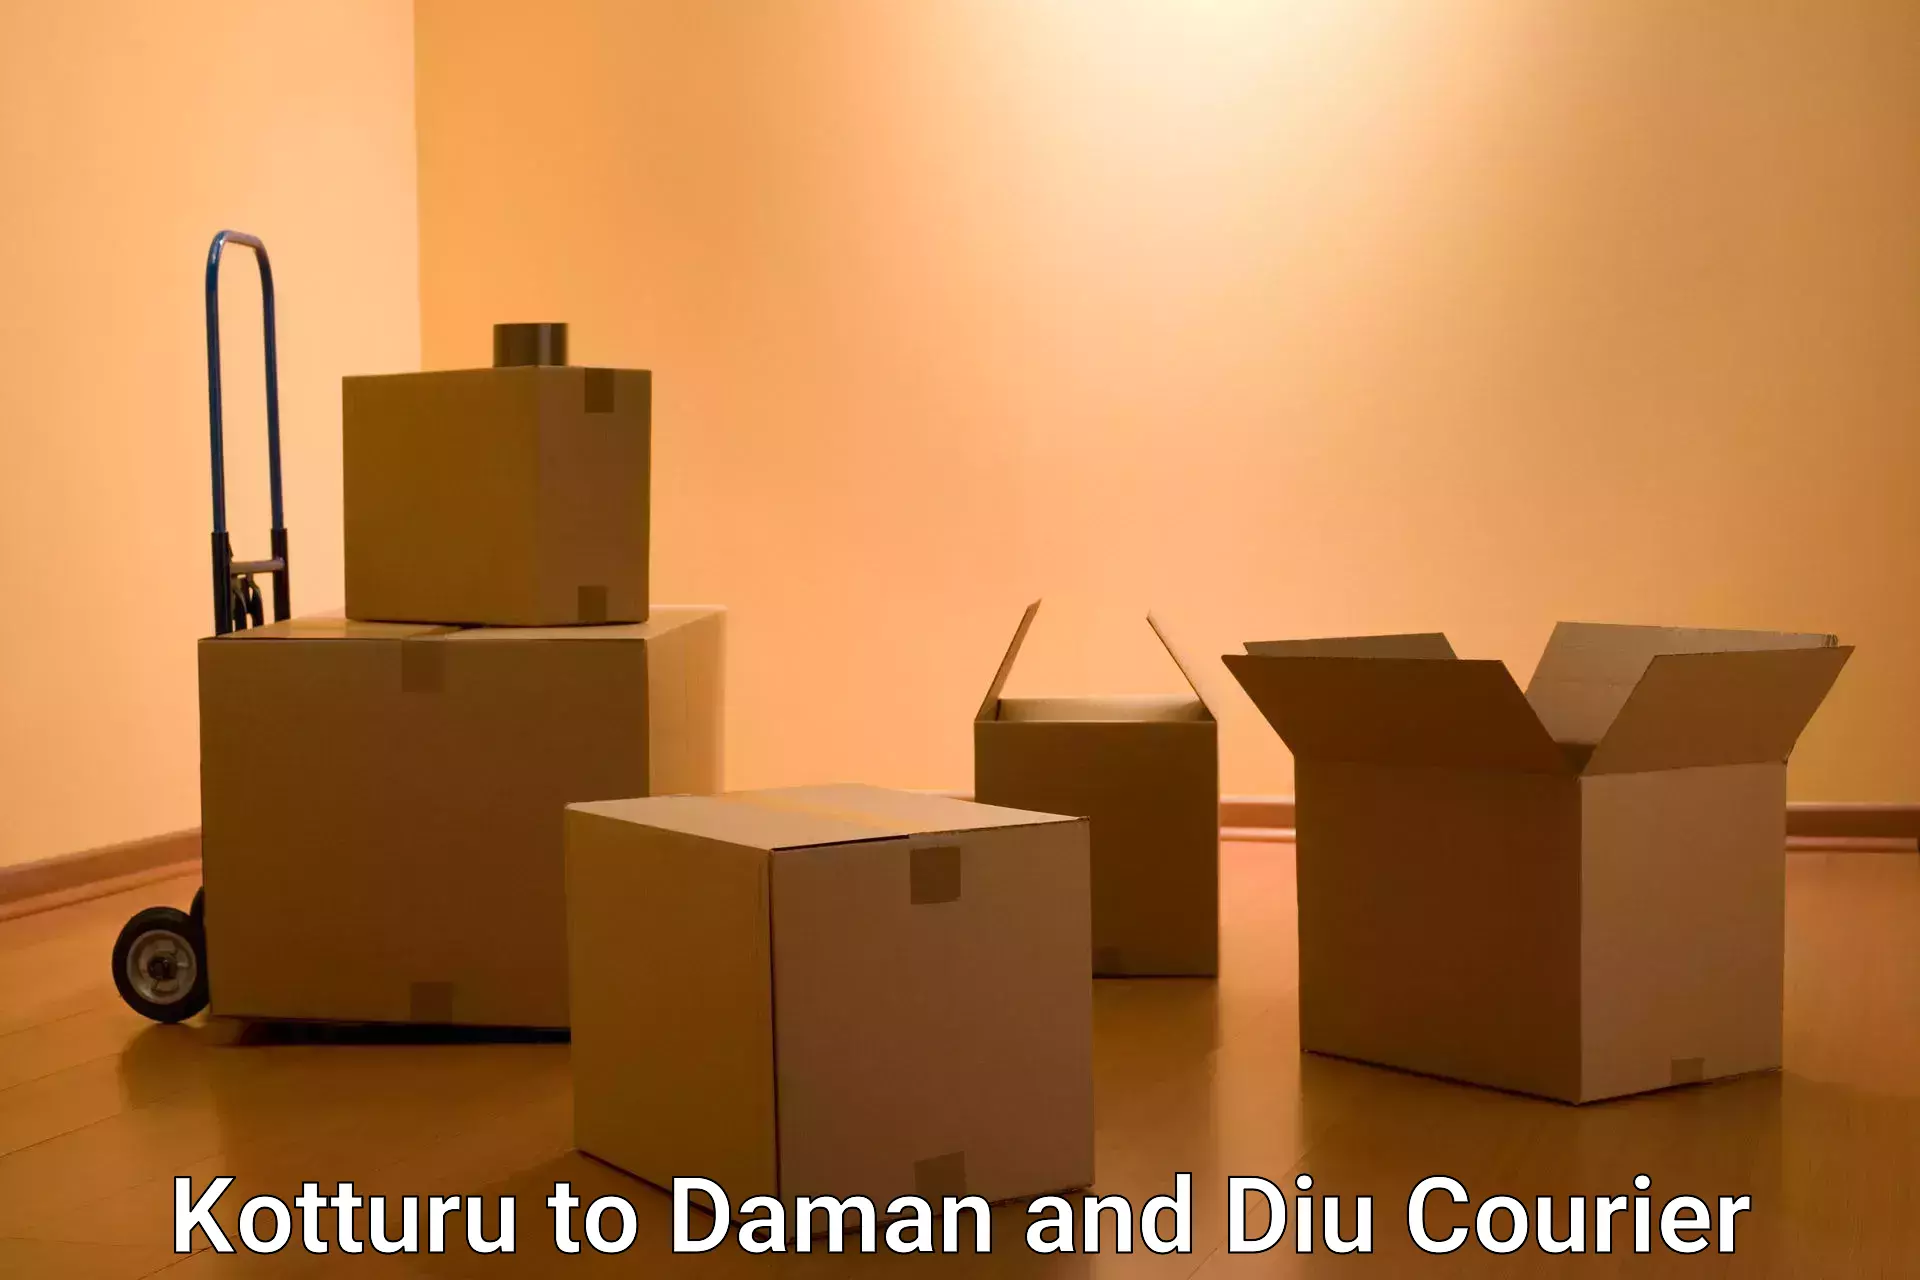 Easy return solutions Kotturu to Daman and Diu